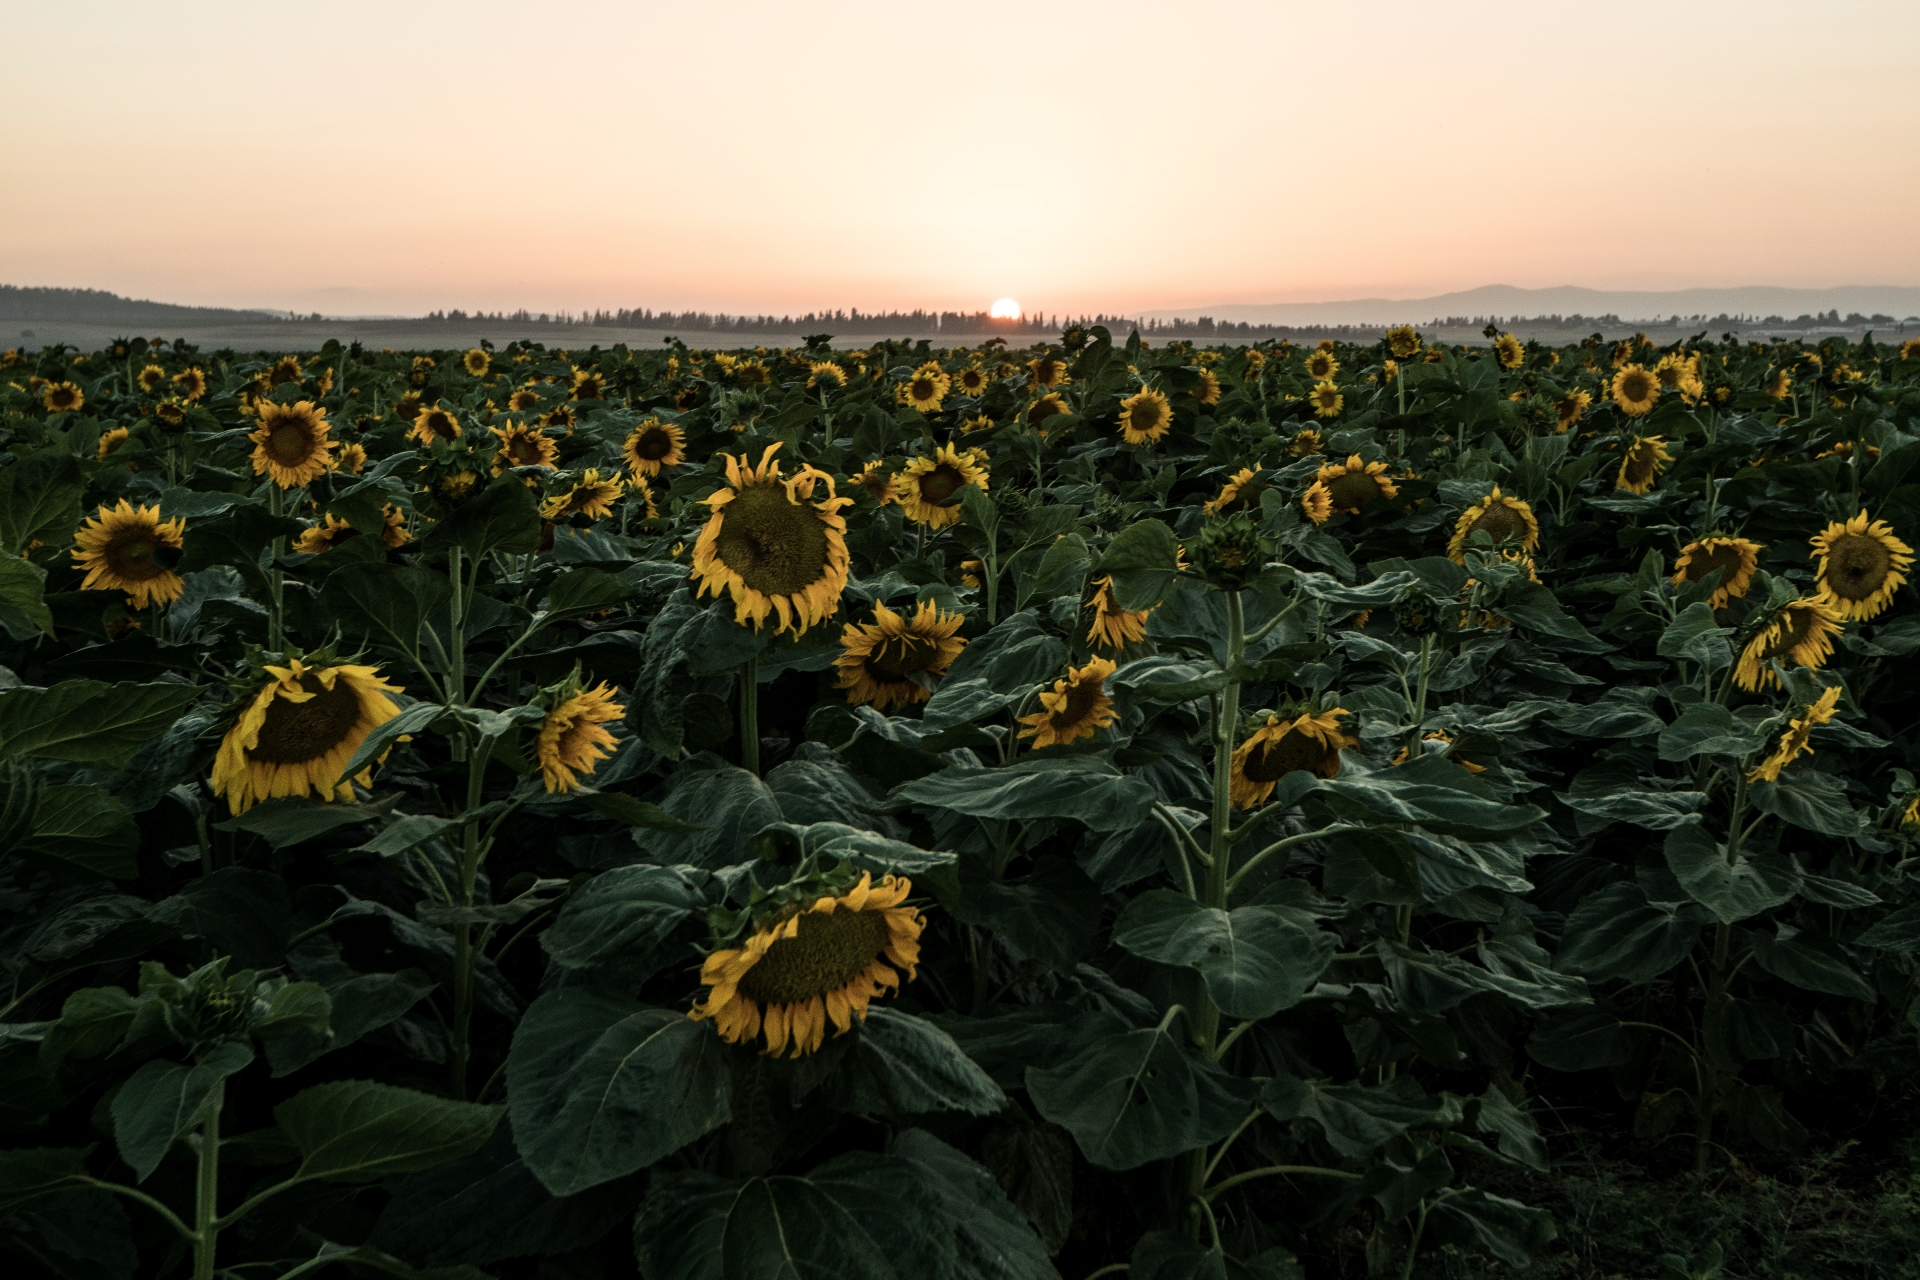 sunflowers in Israel, Me Ra Koh